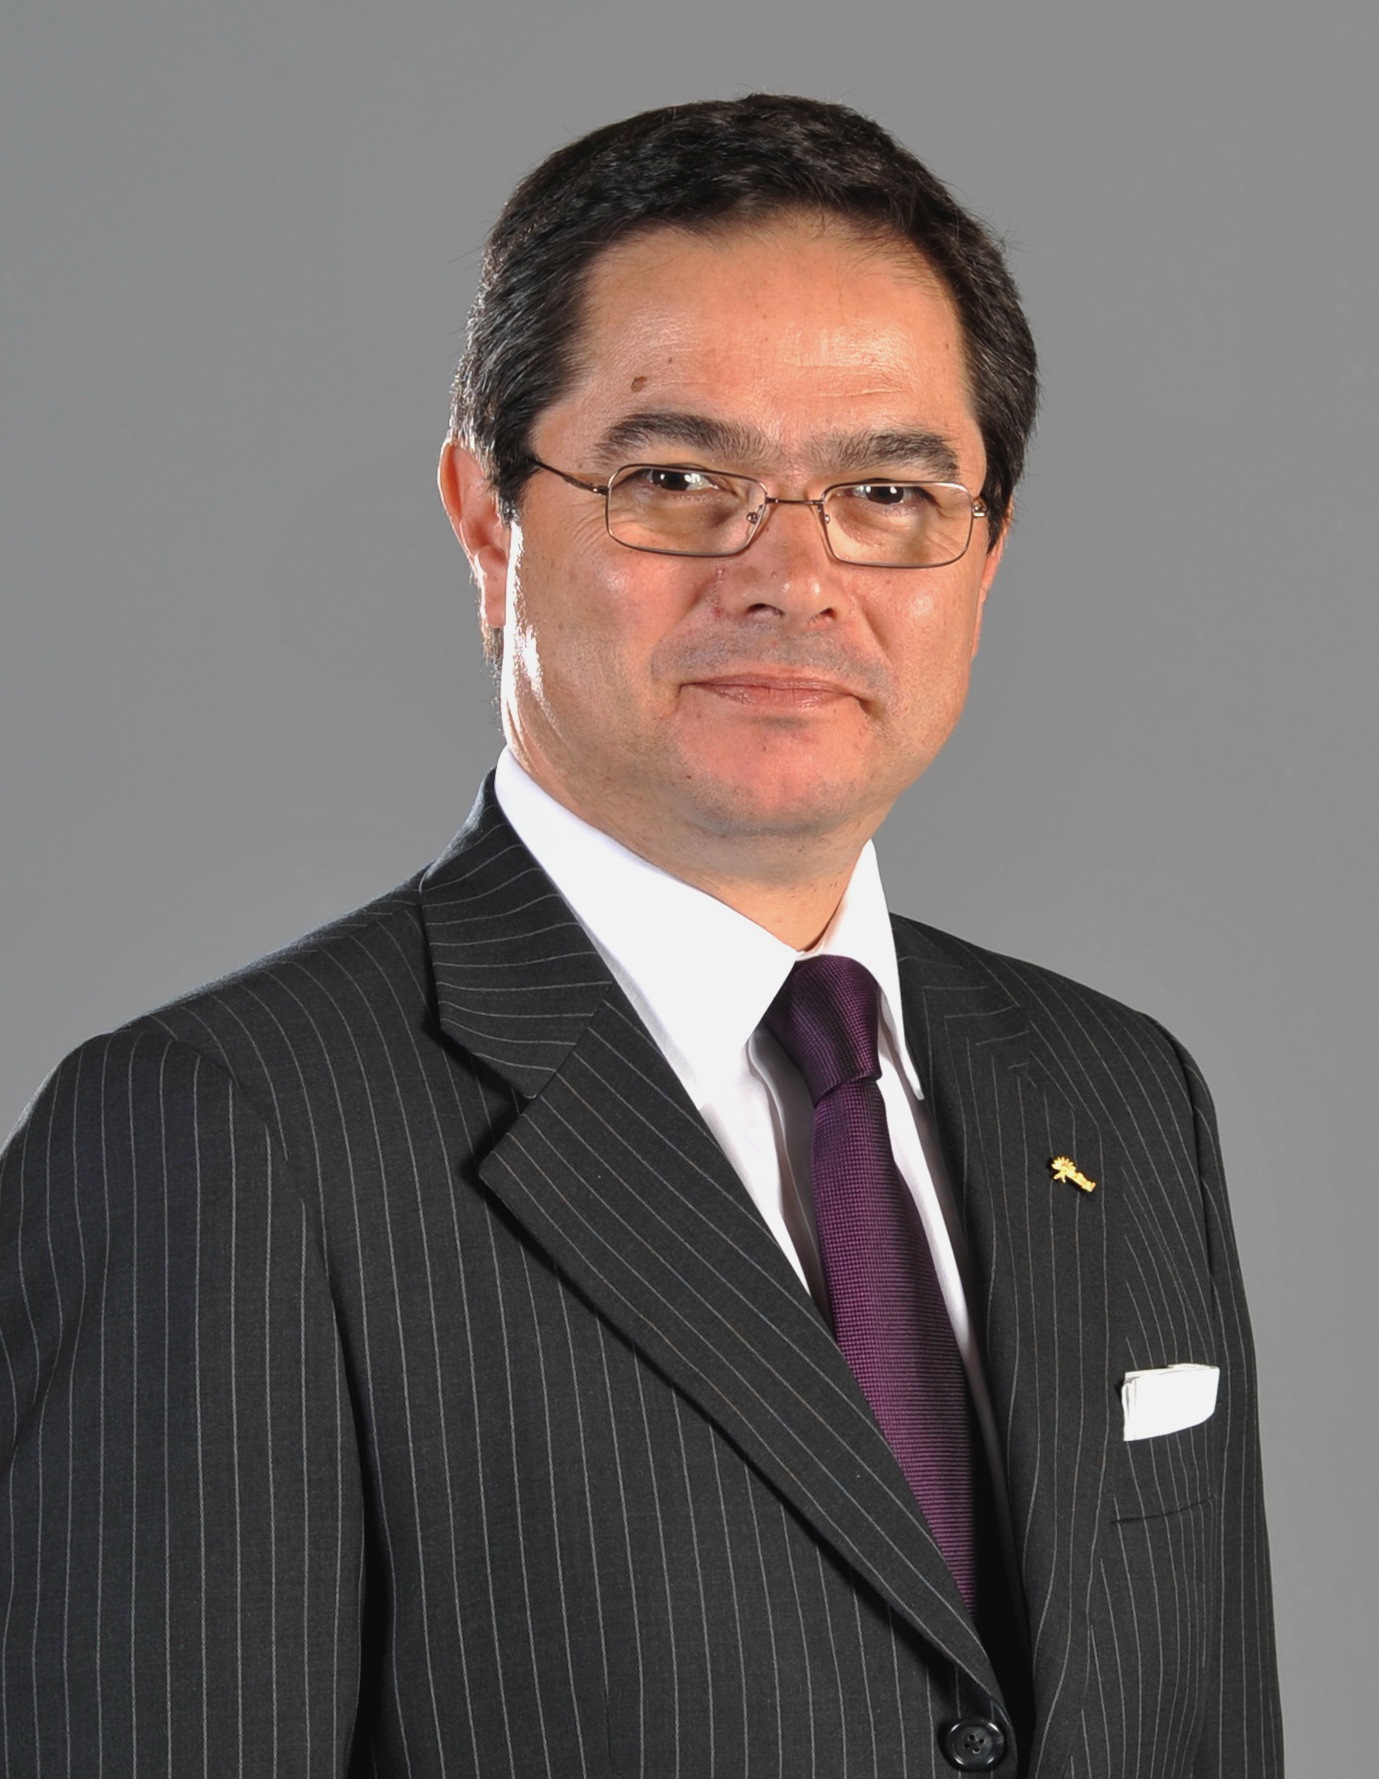 José Antonio Vargas Lleras